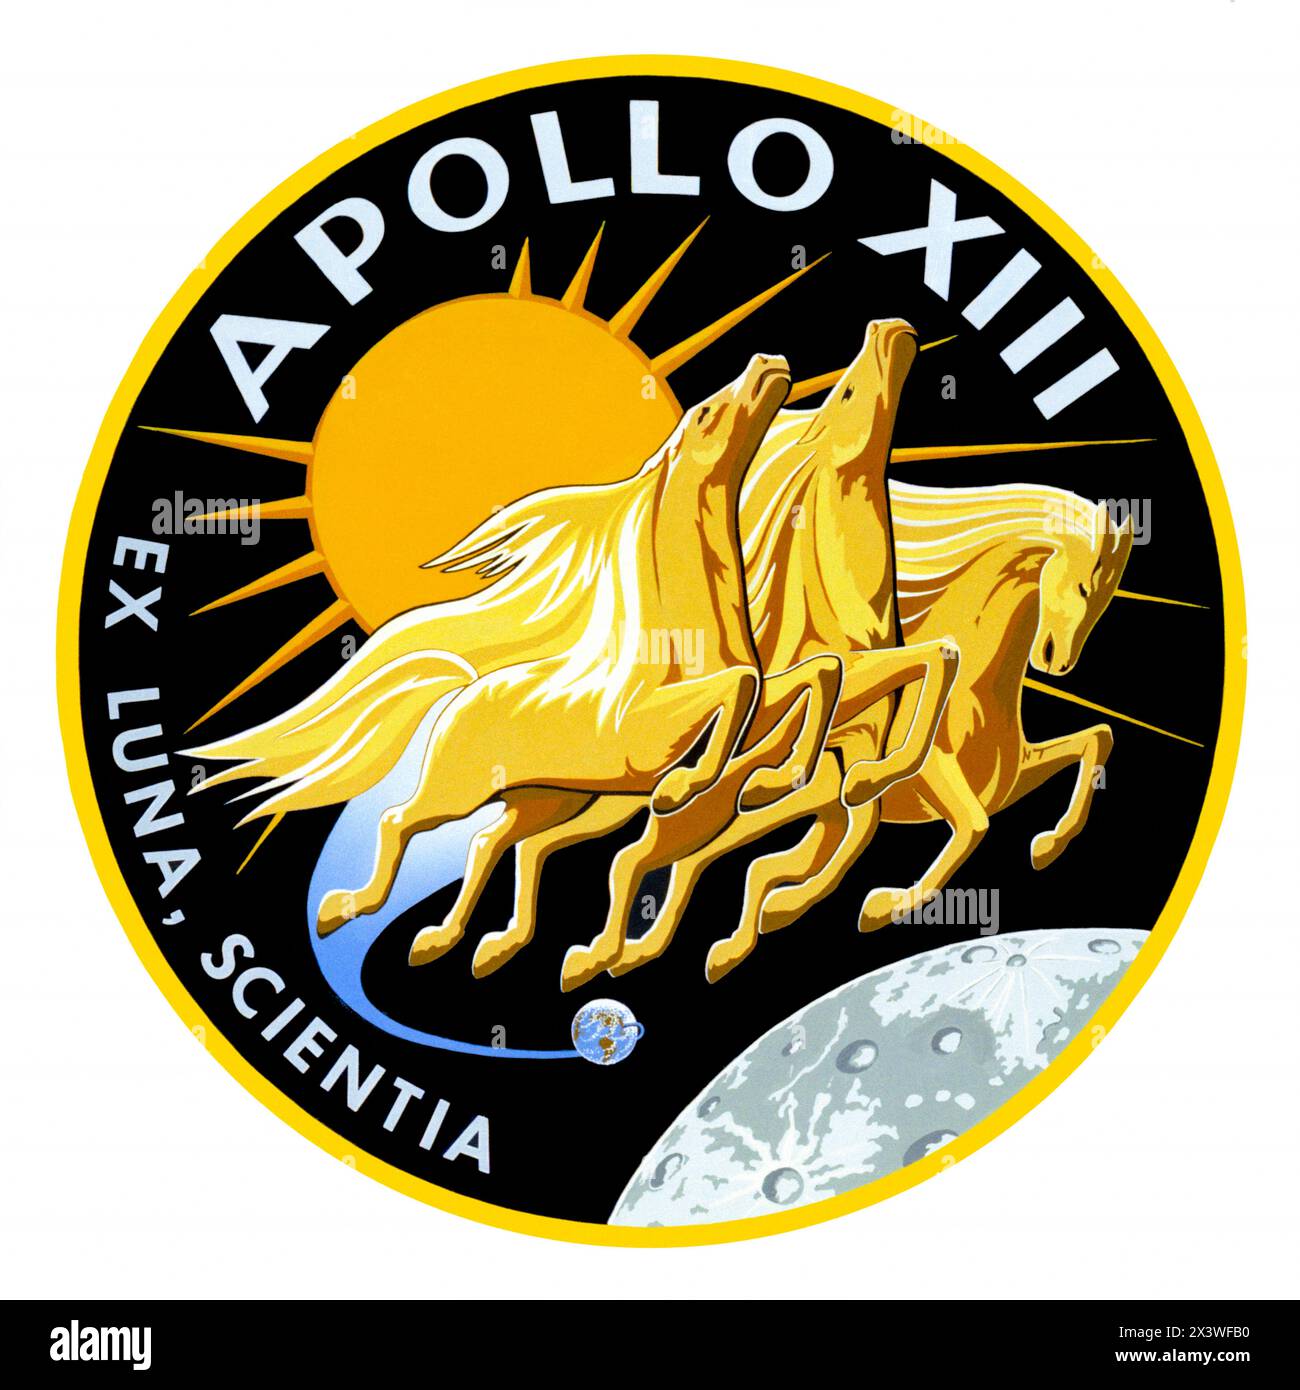 Apollo 13 Mondlandungsmission 1969 Insignien mit Apollo, dem Sonnengott der griechischen Mythologie, und dem lateinischen Satz „ex Luna, Scientia“, was „vom Mond, Wissen“ bedeutet. Stockfoto